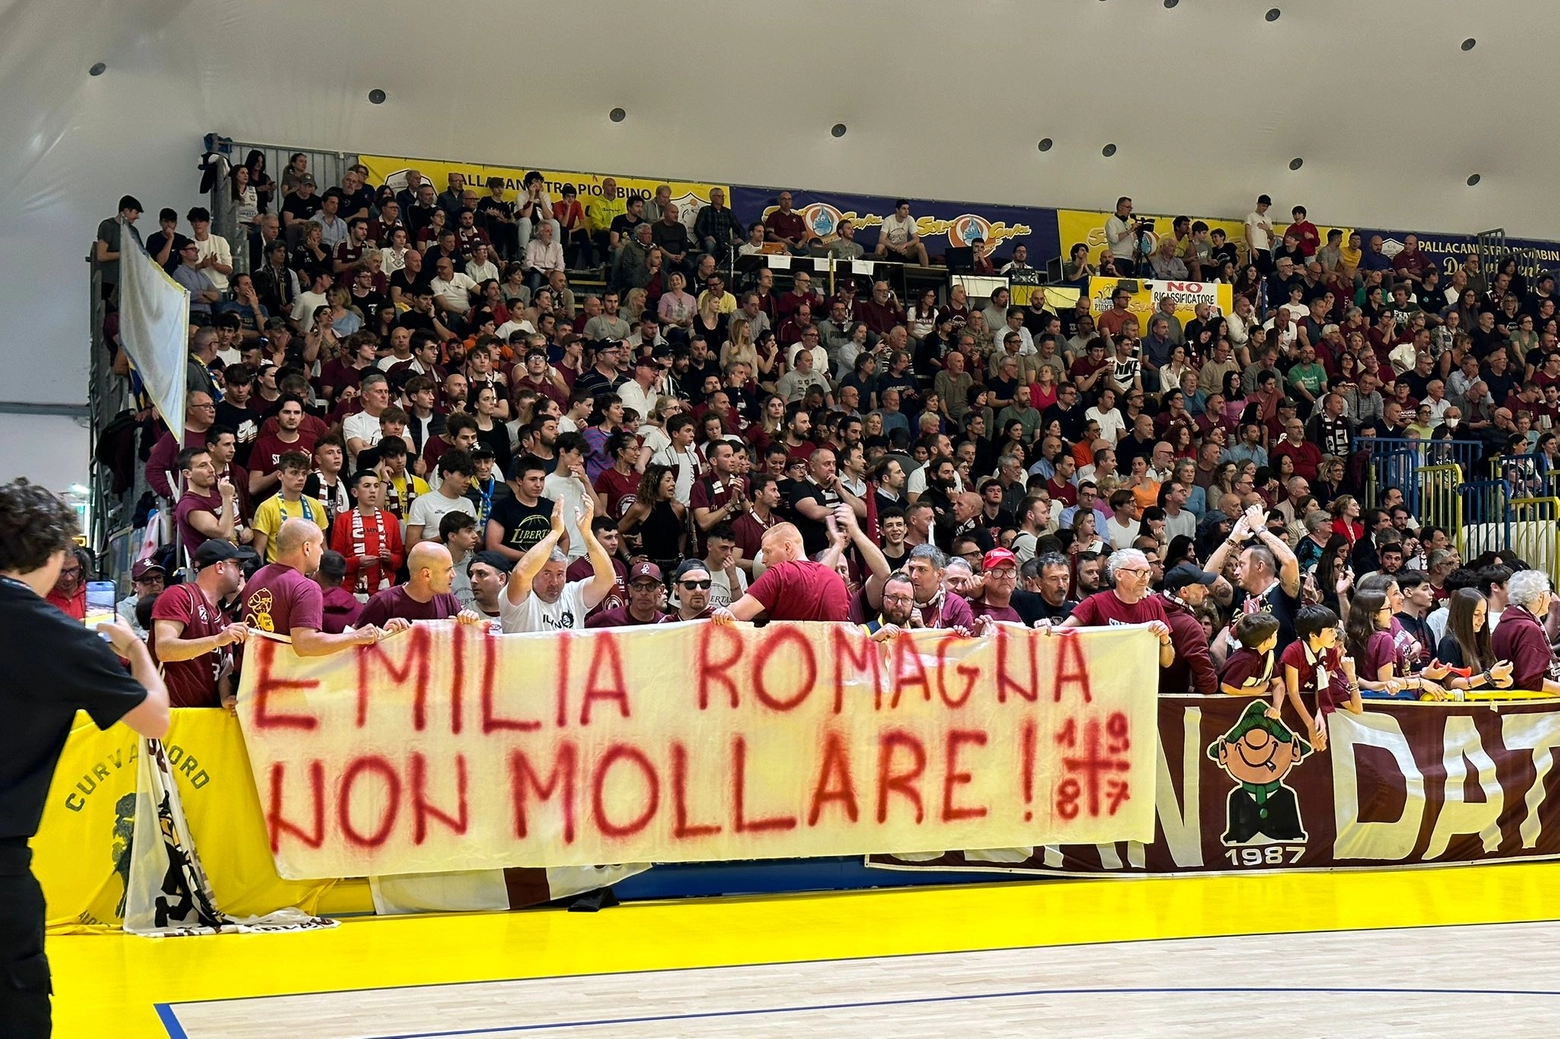 Solidarietà dei tifosi libertassini alle popolazioni dell'Emila Romagna (Foto Novi)